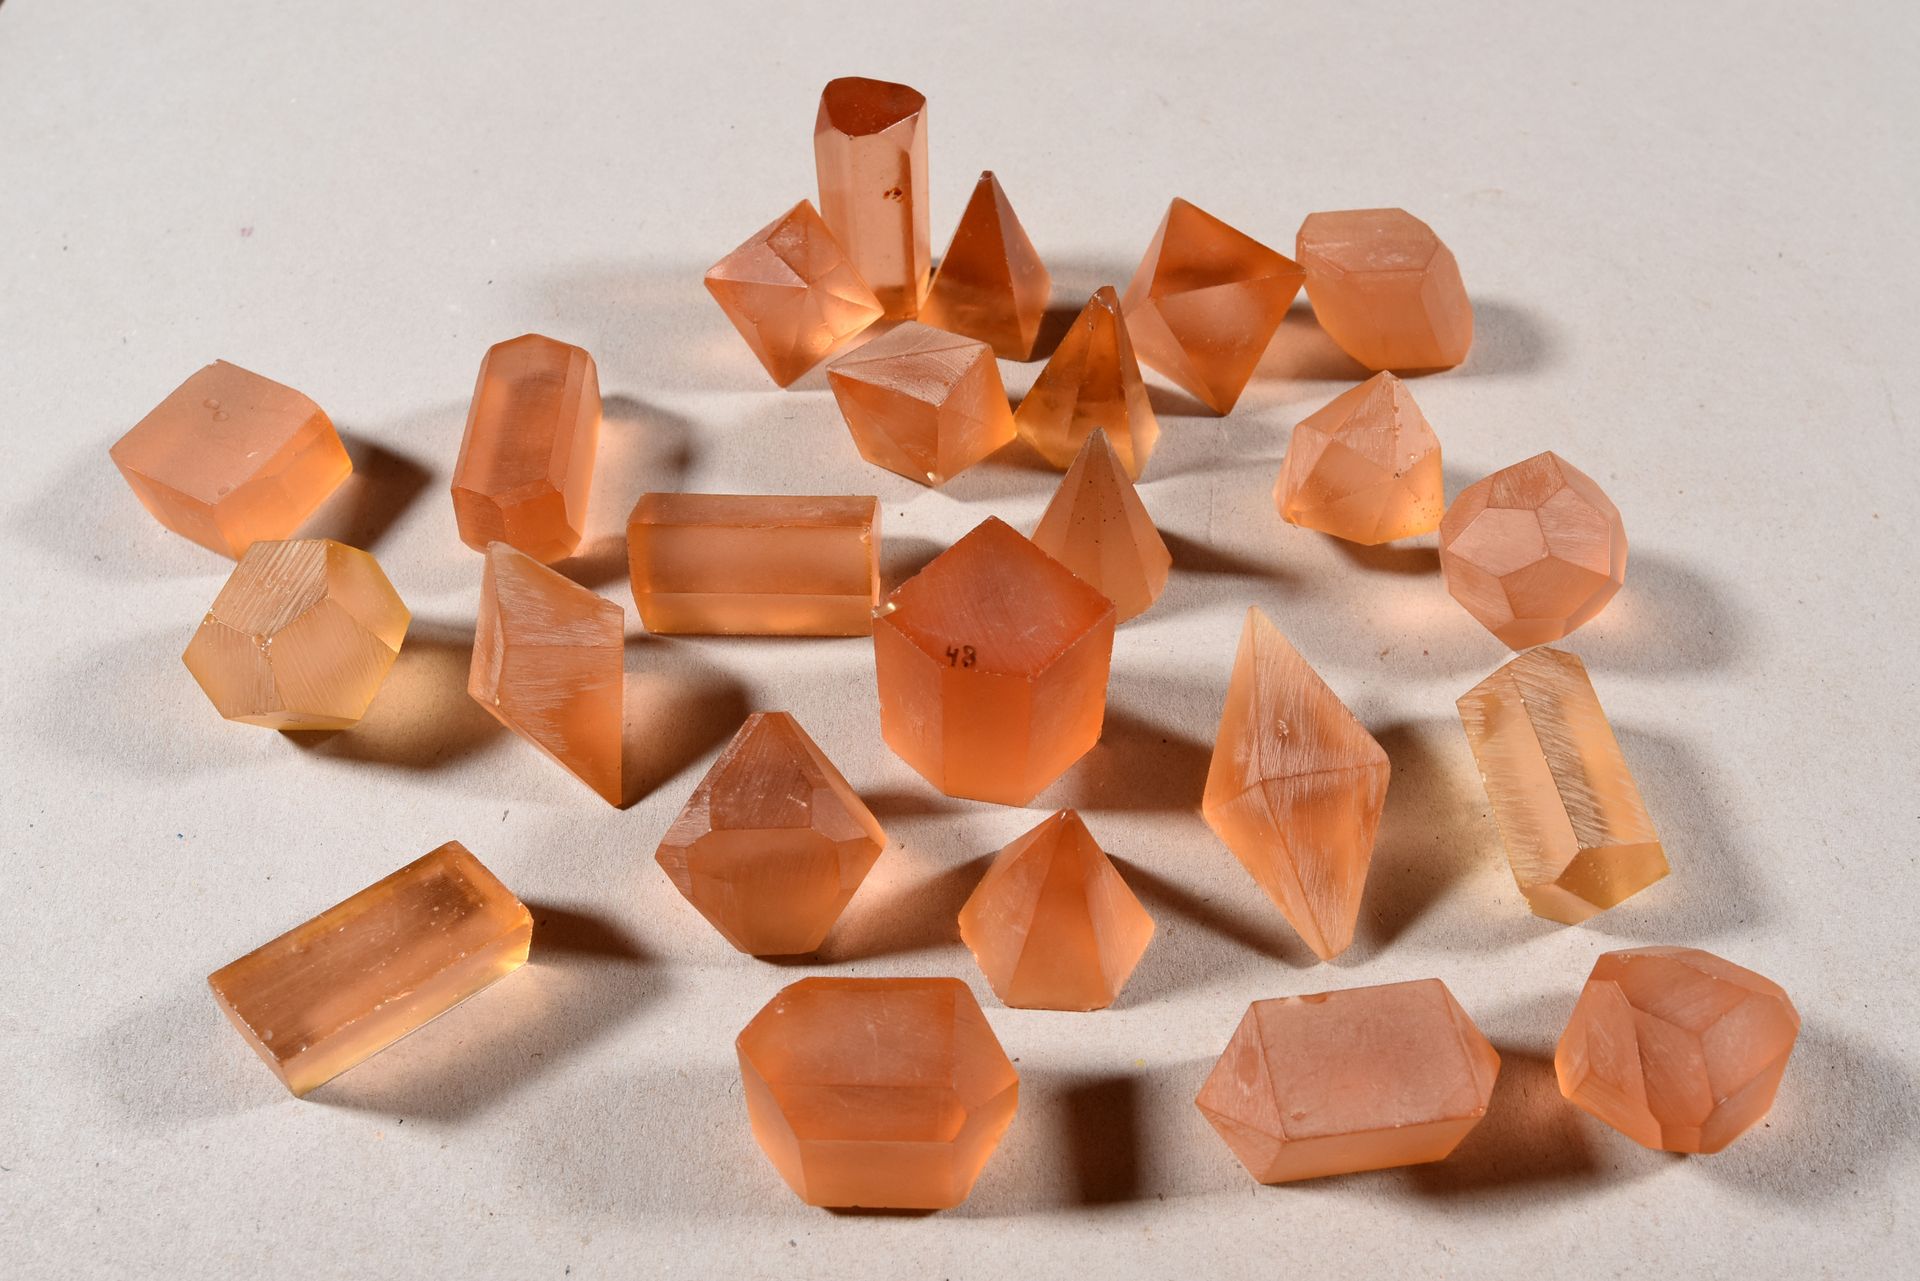 Null 带有晶体结构的盒子，估计是用于研究和教育目的。[科隆矿物学研究所] 19-20年代 41件陶器，25件树脂，1件木器（小缺陷）。木制框架。